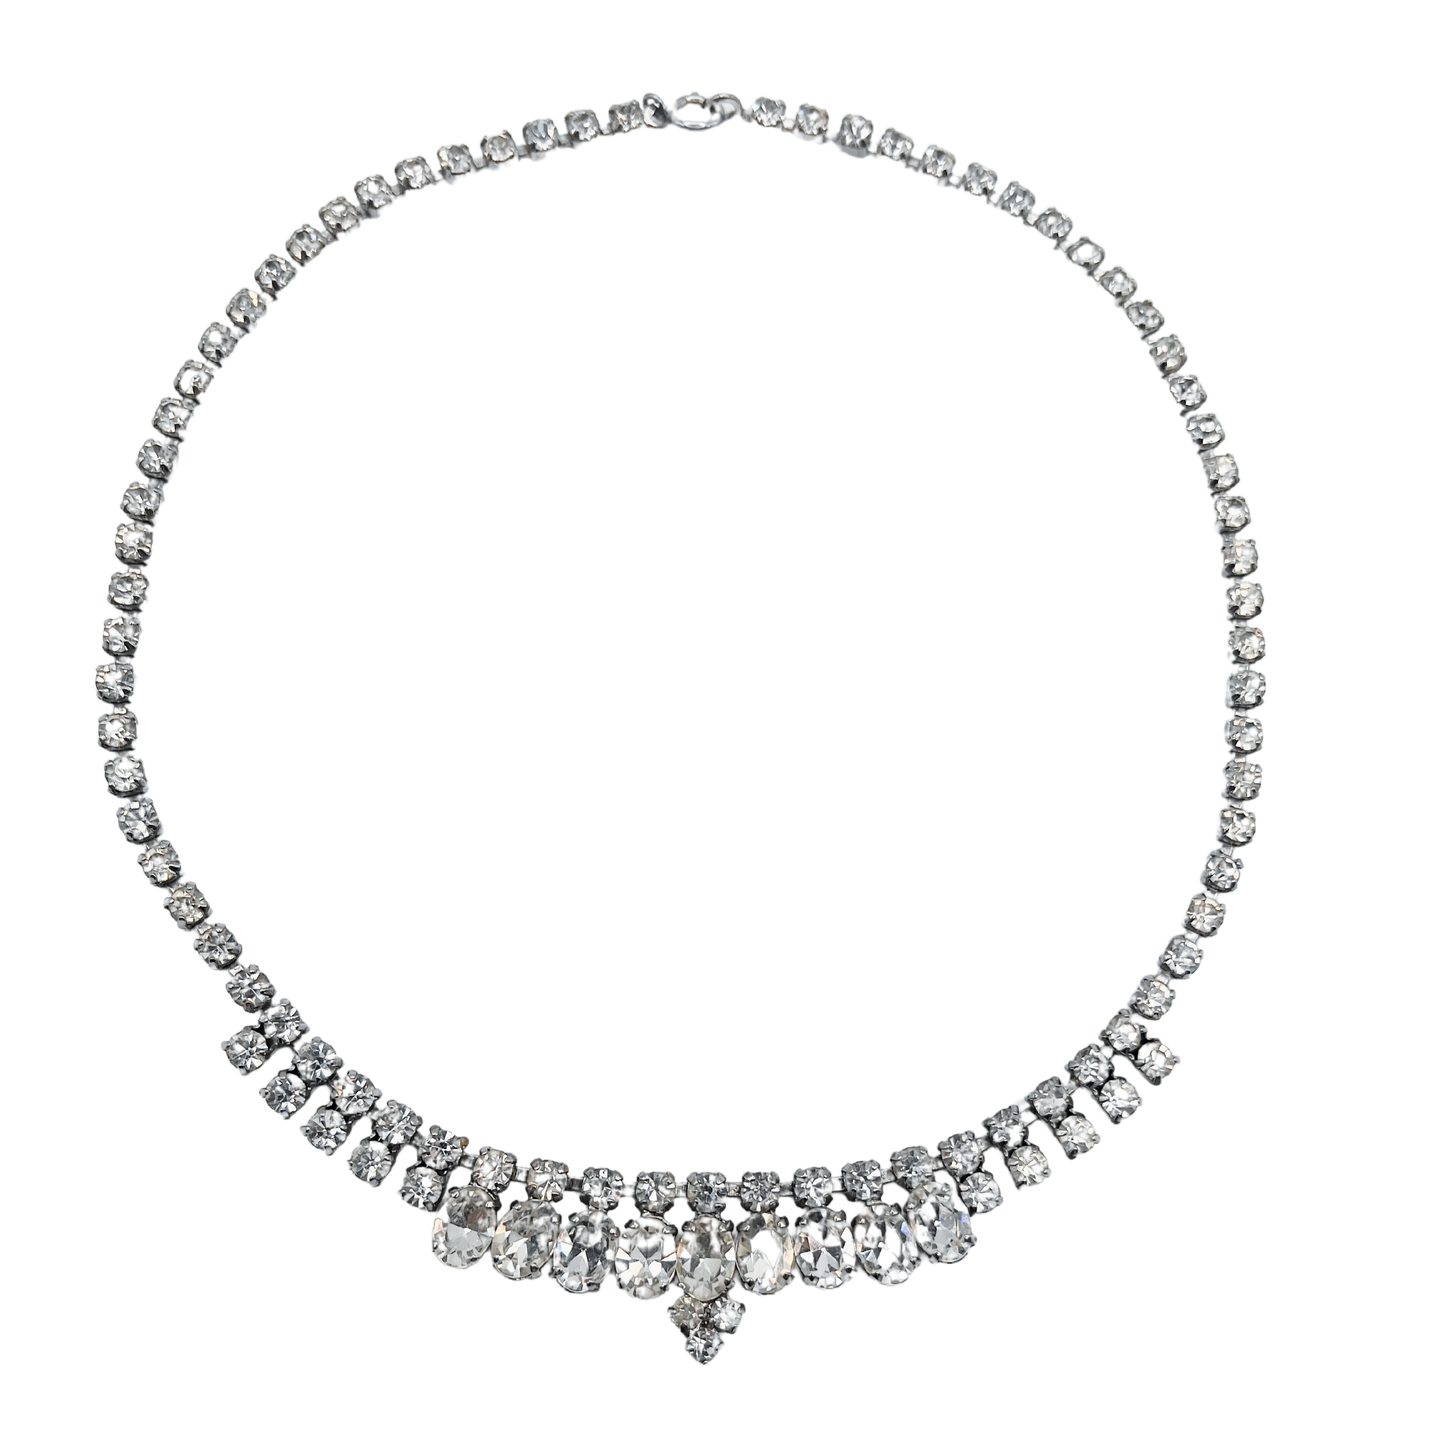 vintage 1950's diamanté necklace with central detail